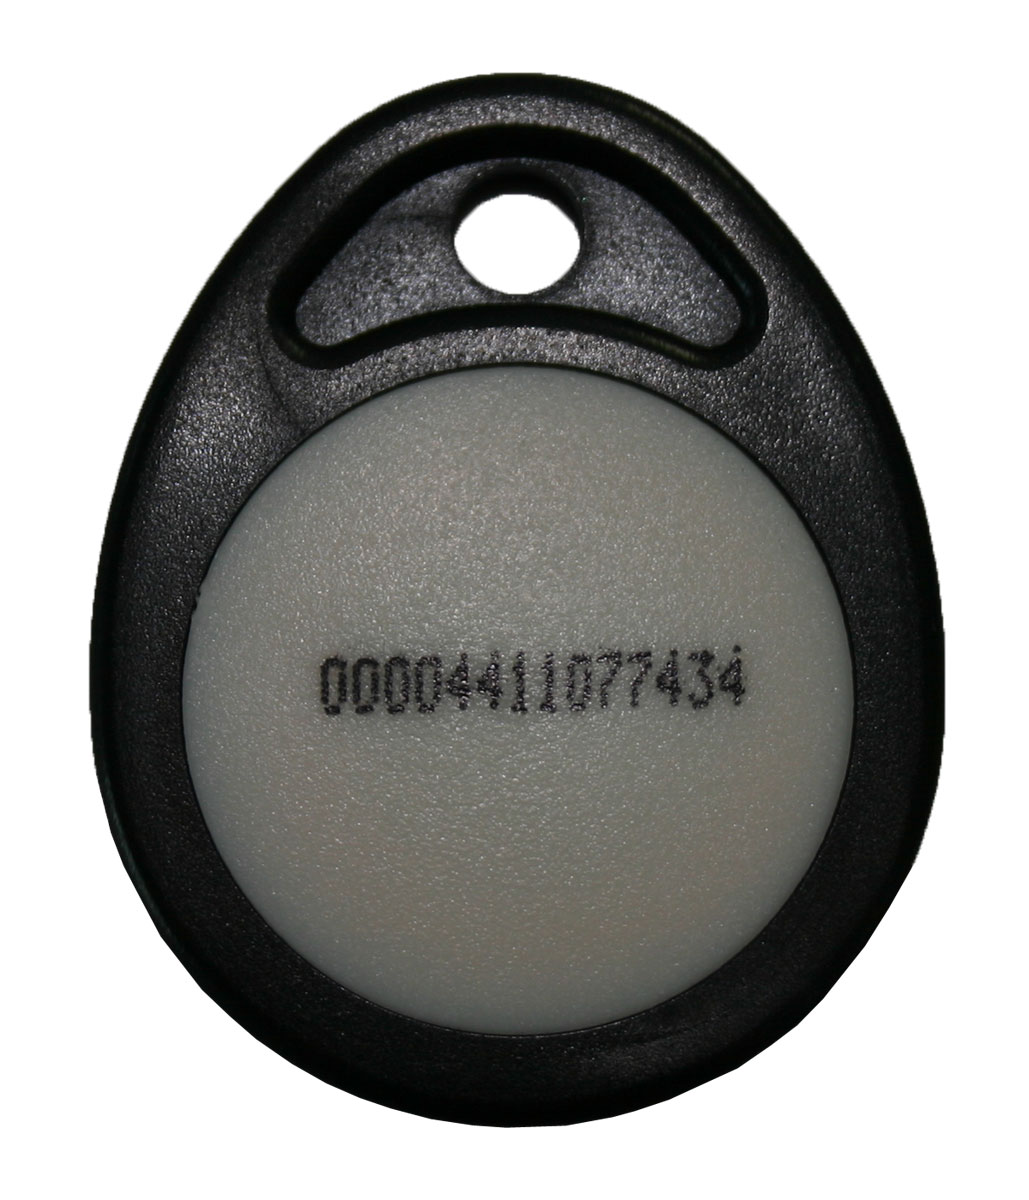 badge electromagnétique de proximité - controle d'accès - trebi france - faptrebi - bricometal